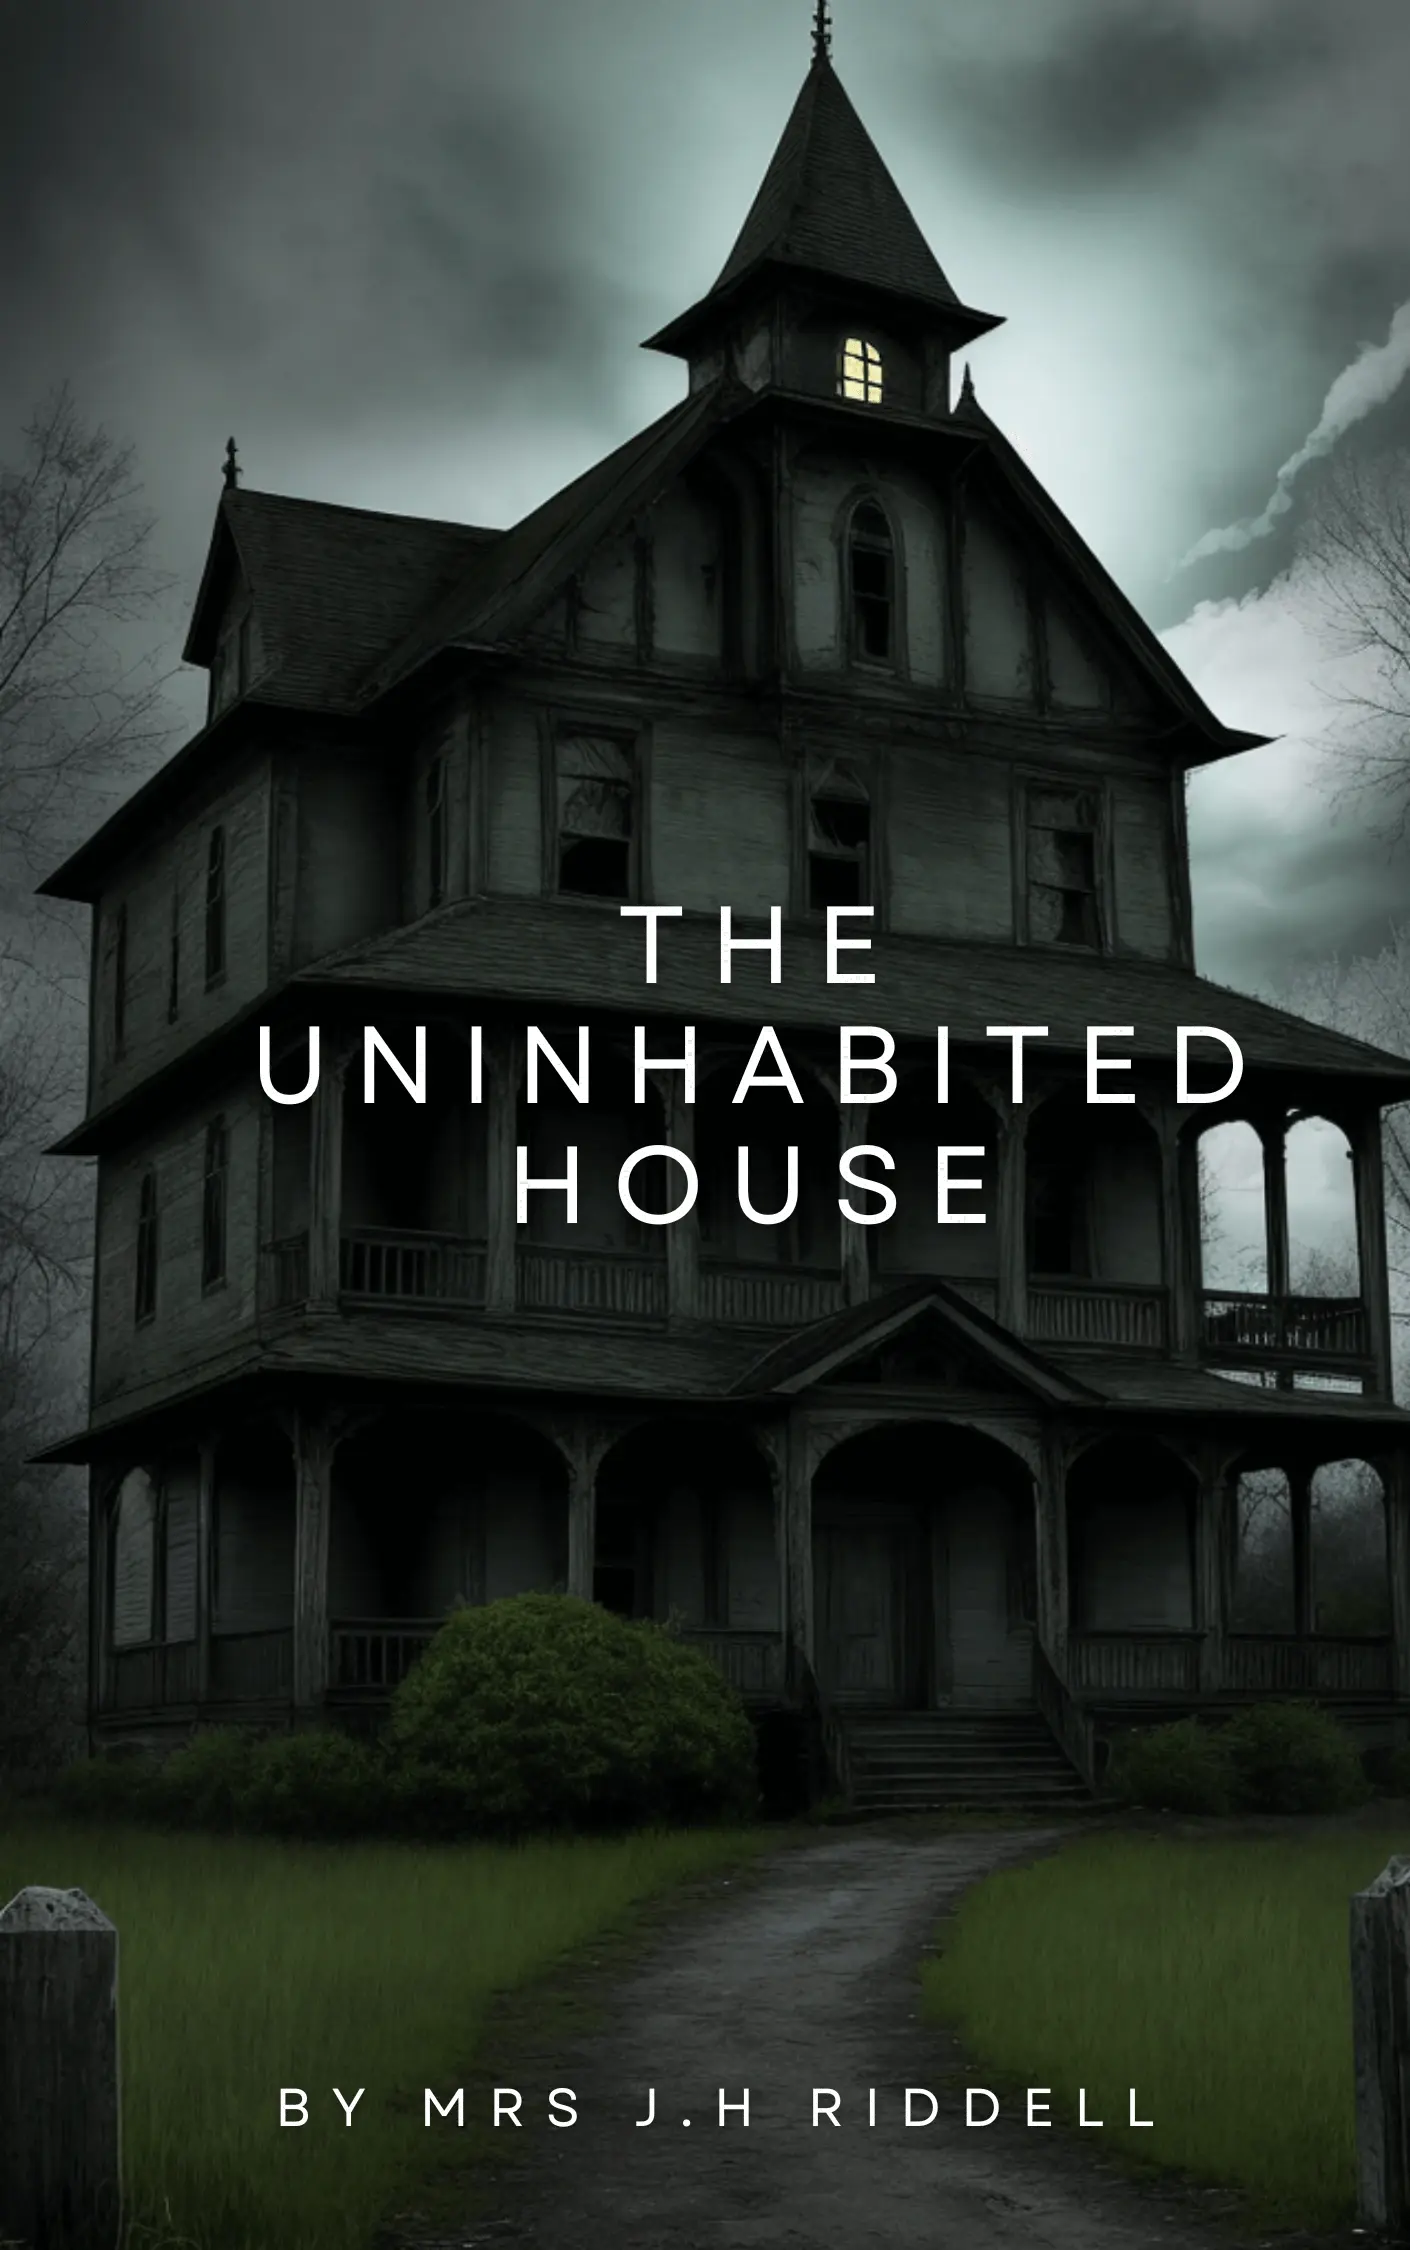 The Uninhabited House by Mrs. J. H. Riddell Audiobook